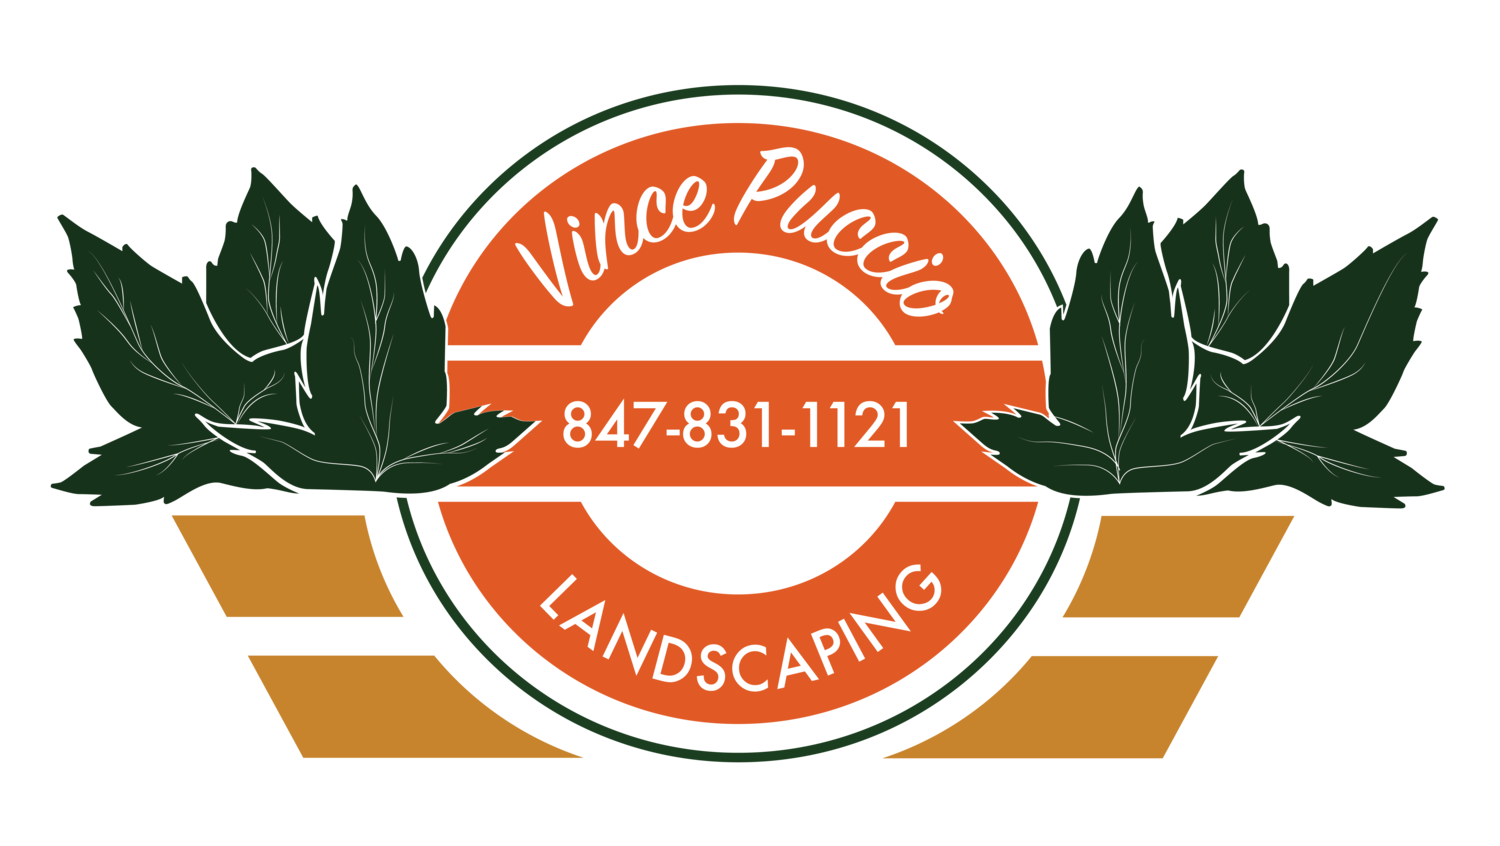 Vince Puccio Landscaping